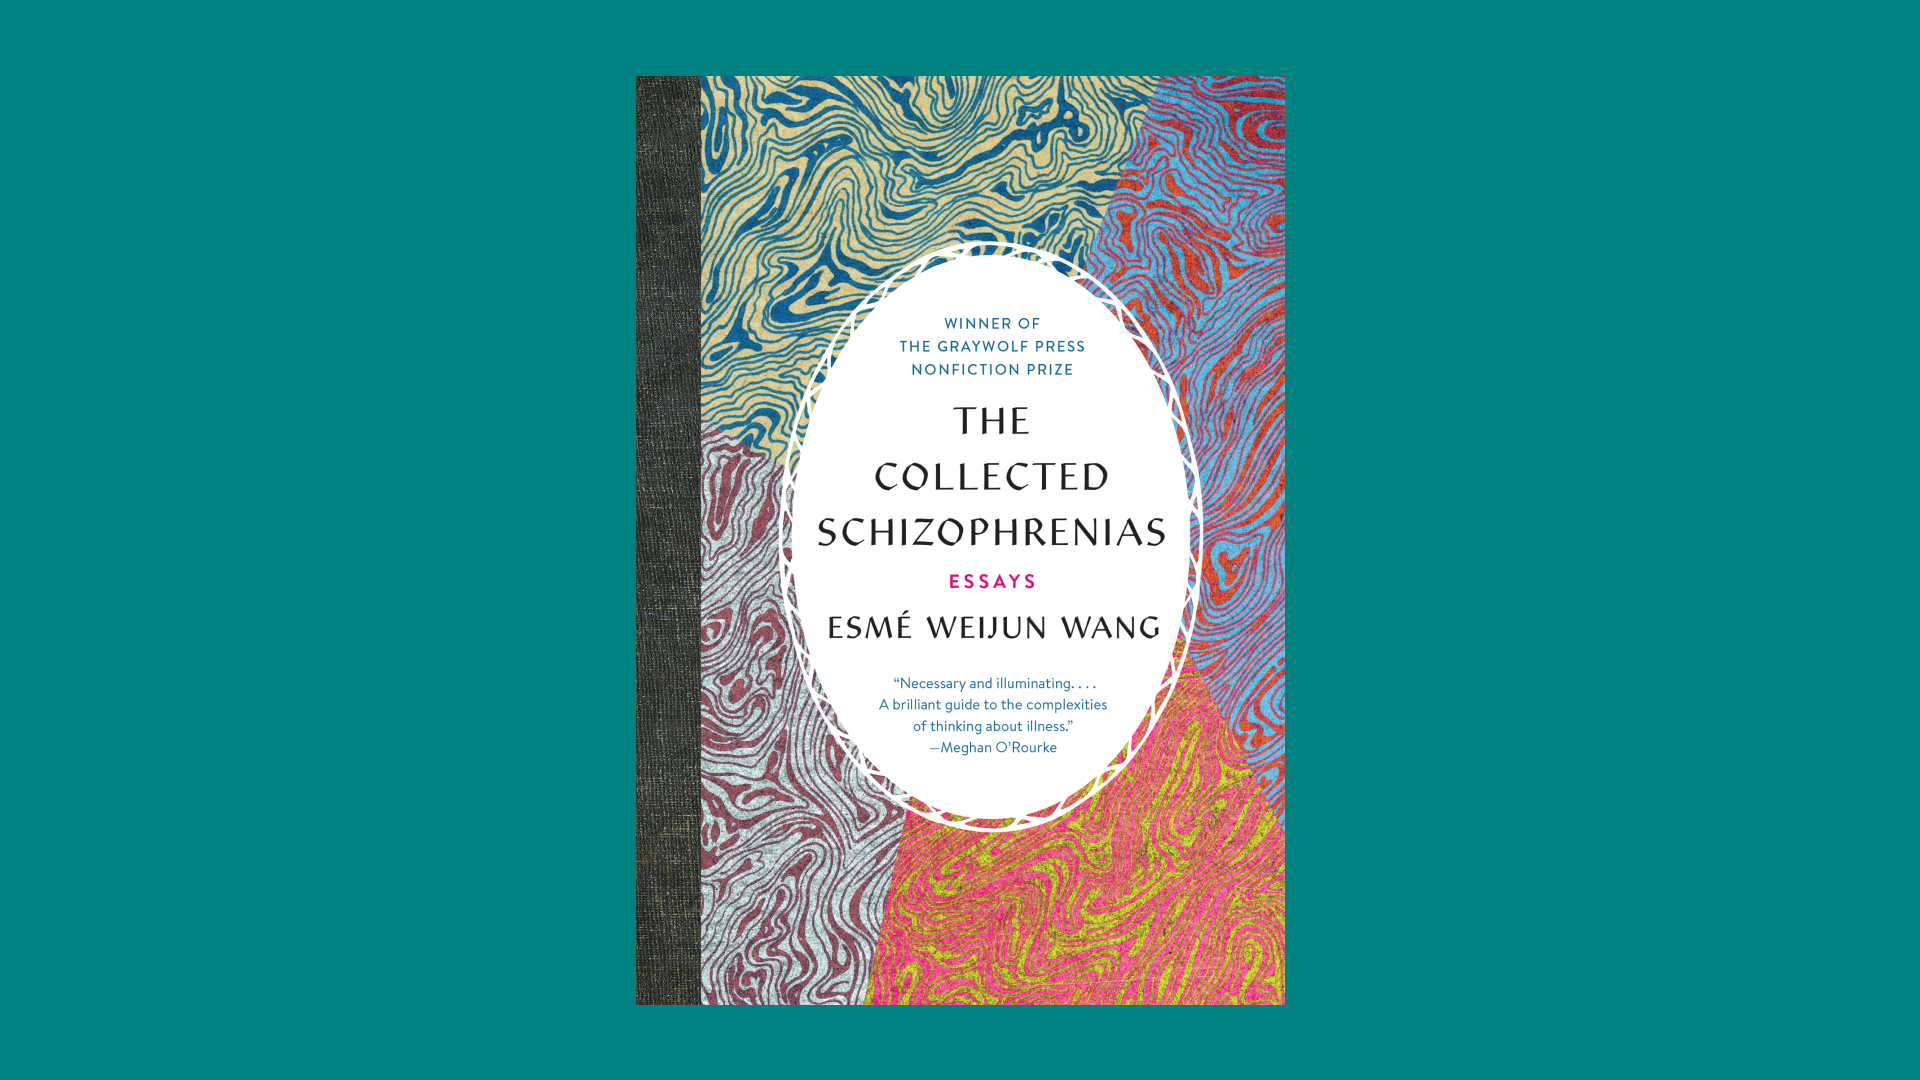 "The Collected Schizophrenias" by Esmé Weijun Wang